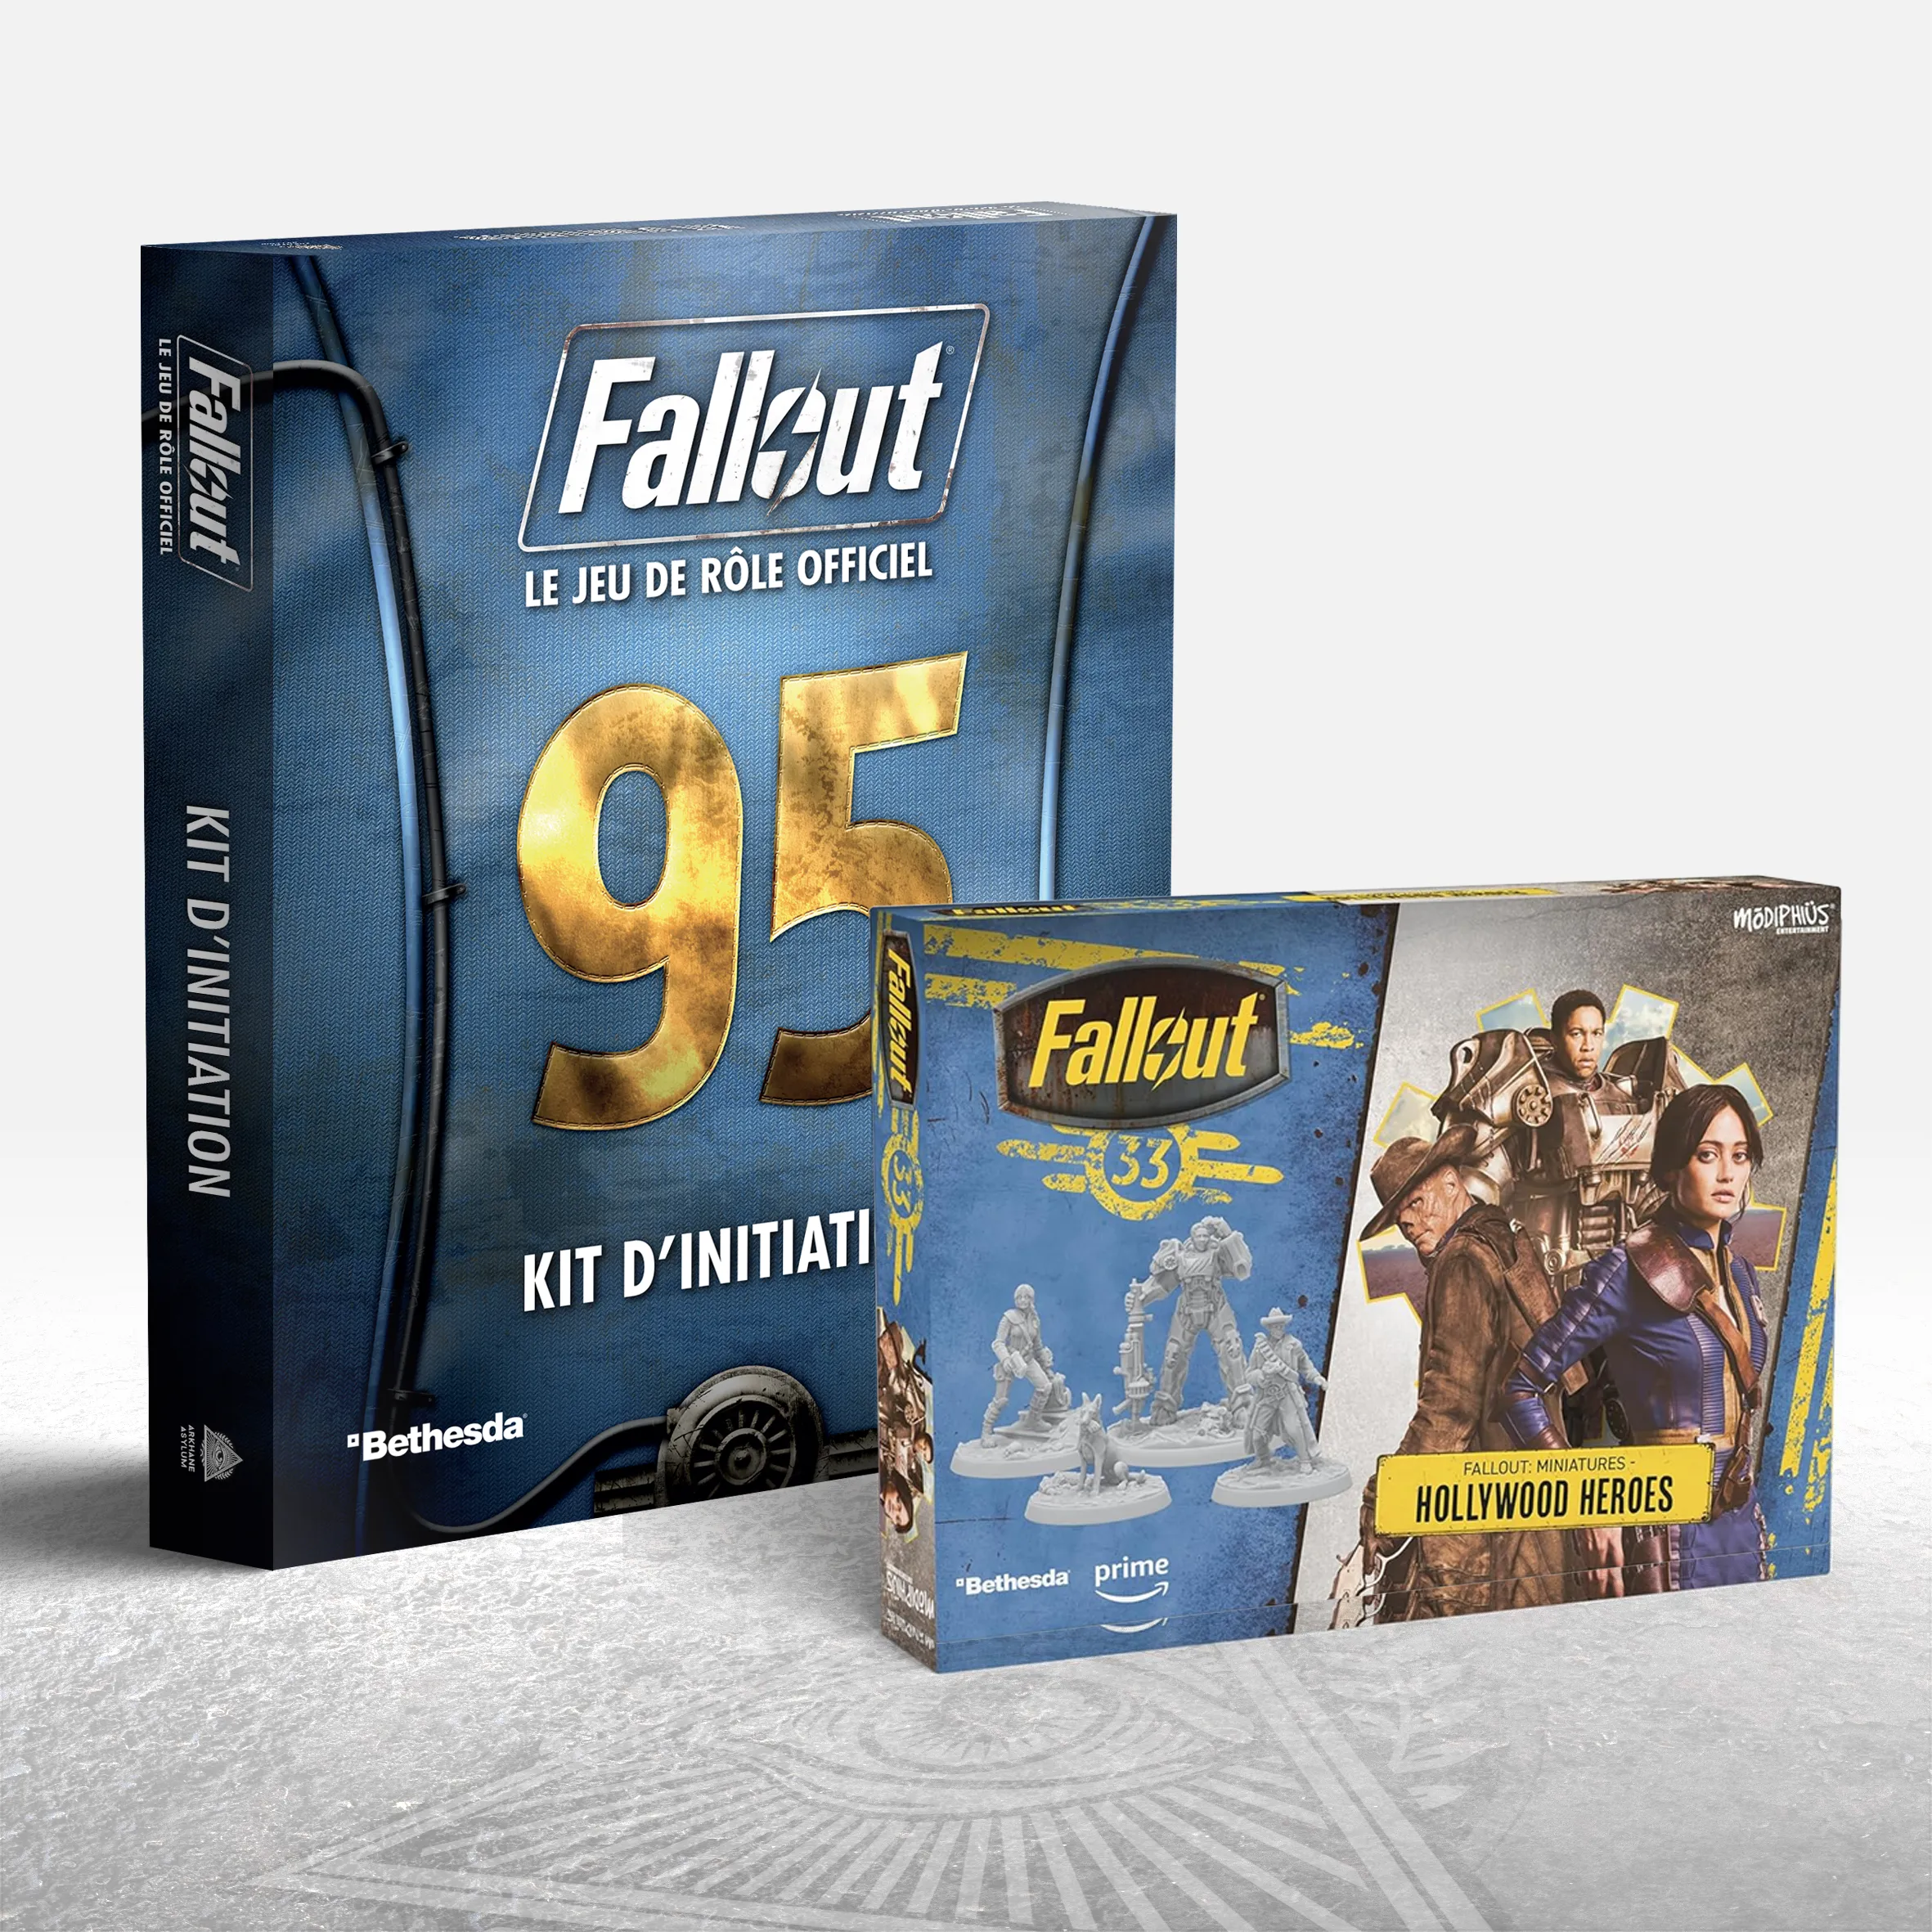 Fallout: Pack Okky Dokky